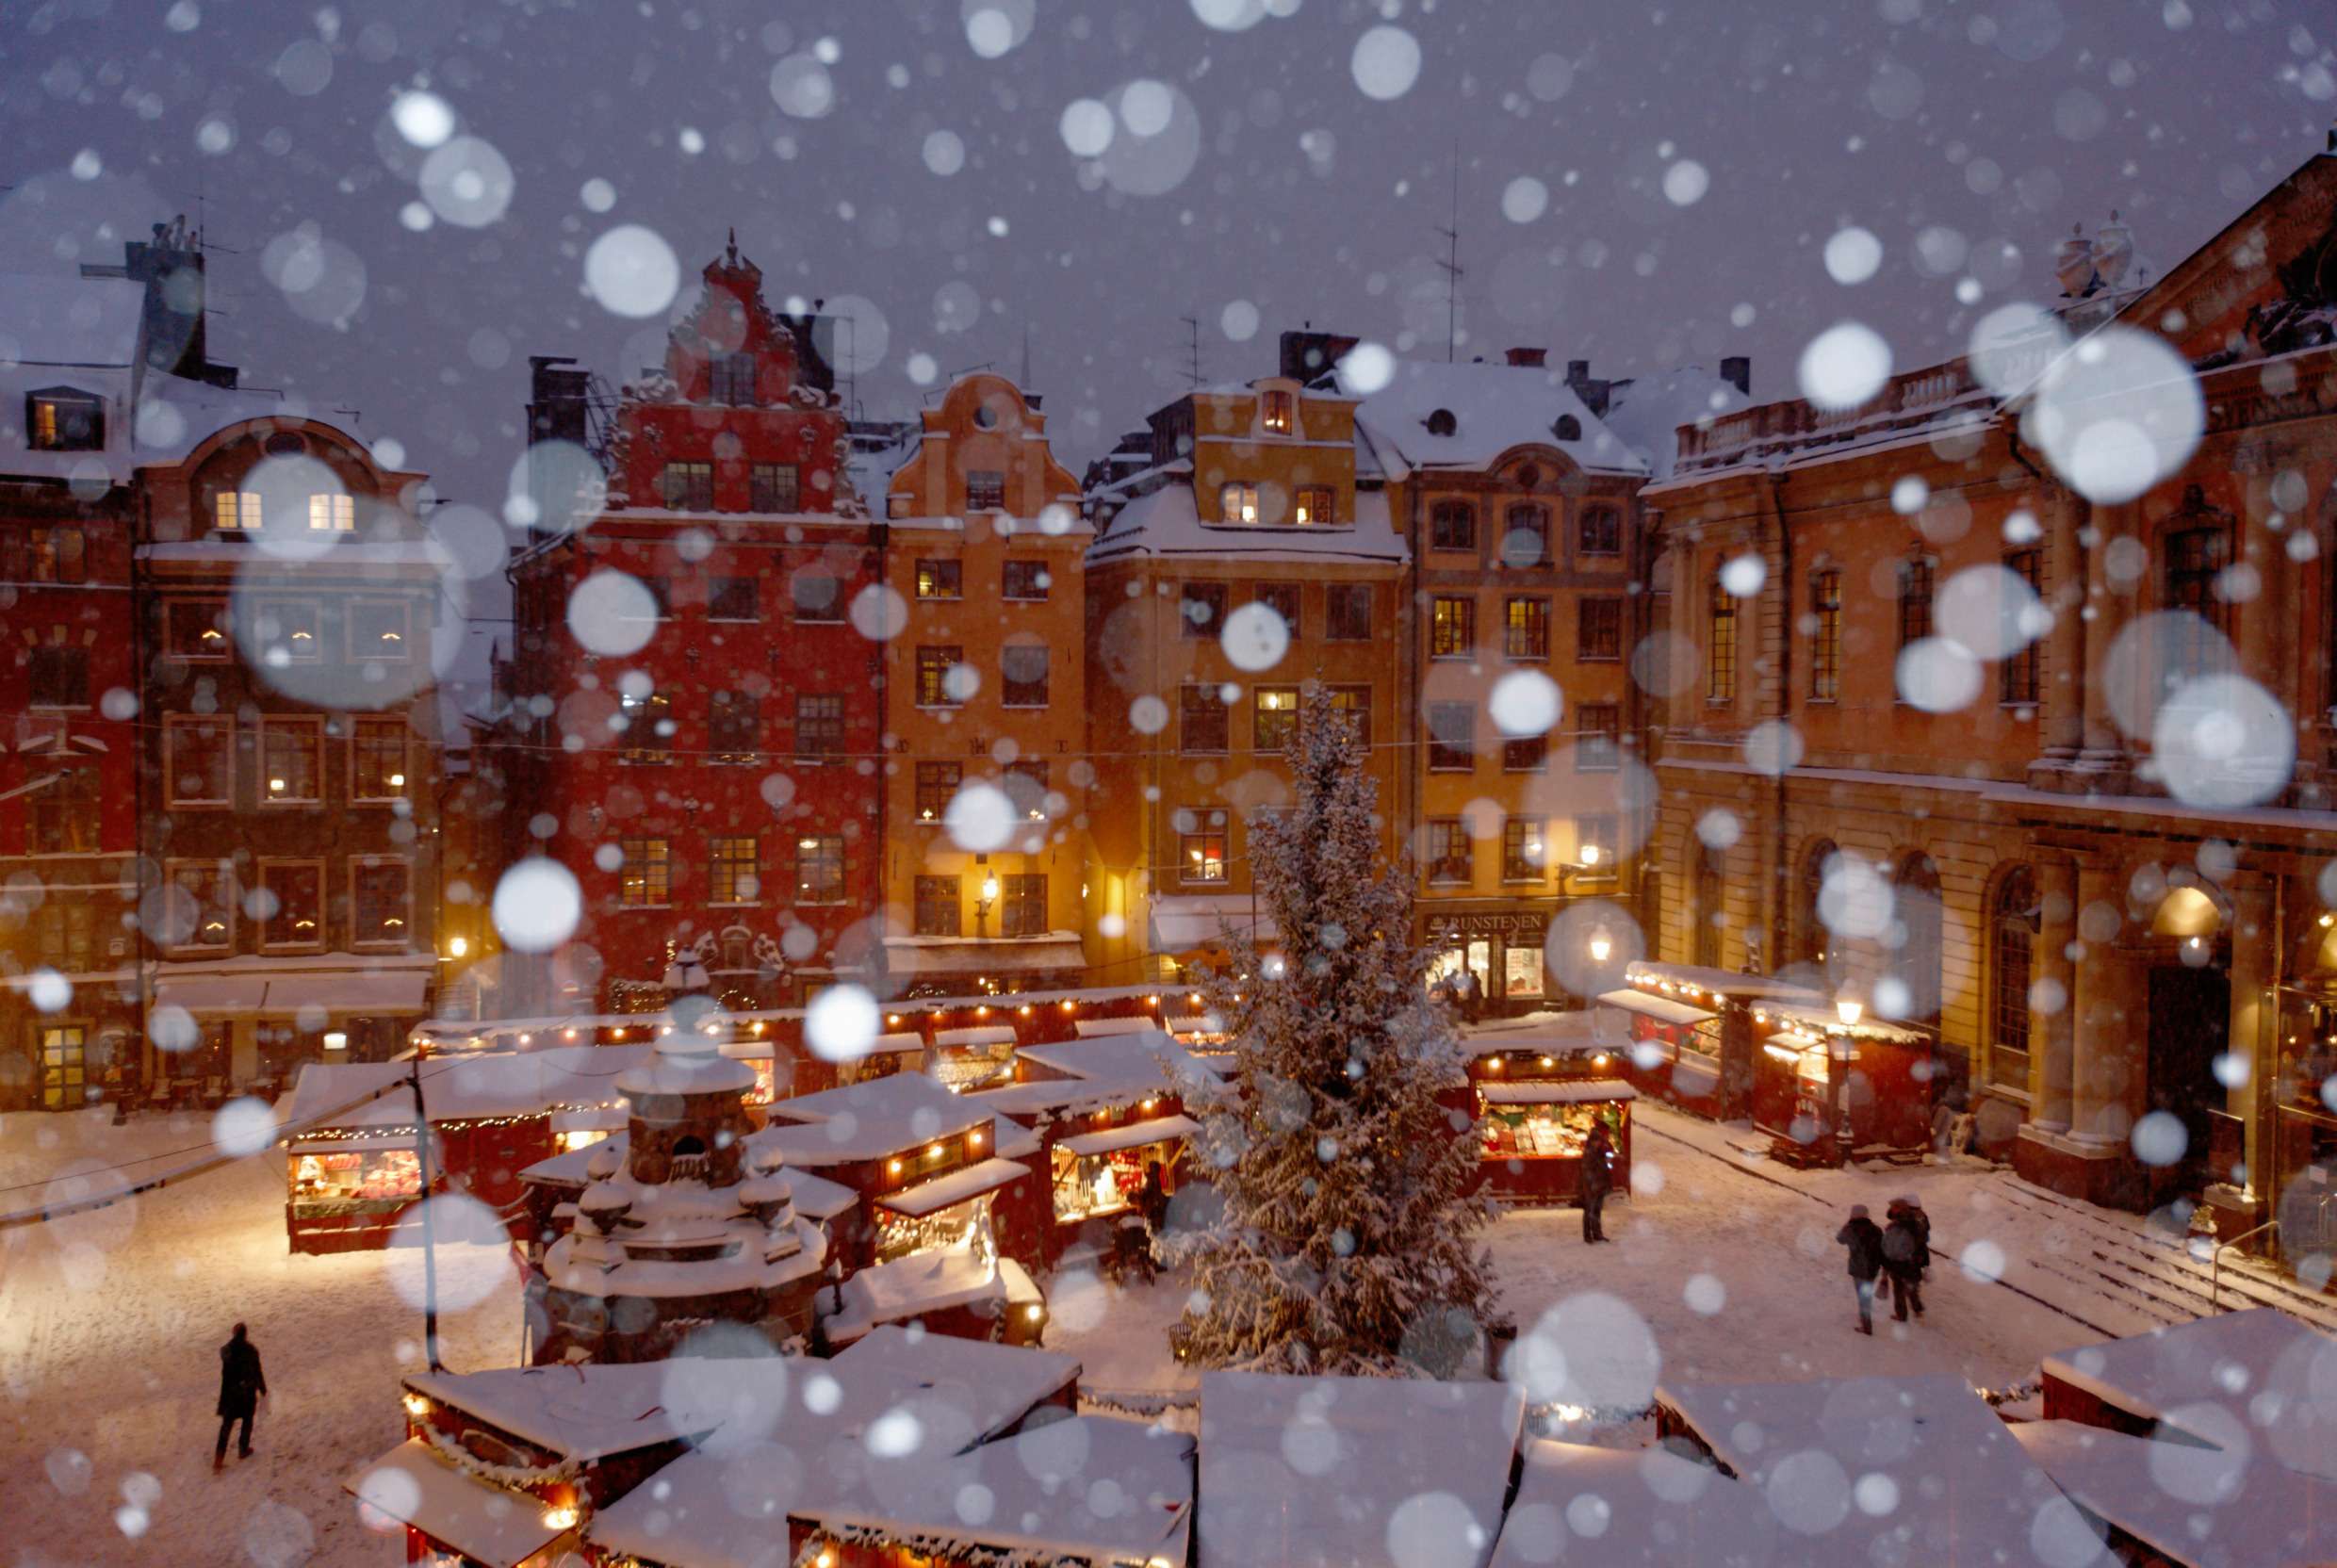 En flygbild över ett snöigt stora torget i Gamla Stan i Stockholm. På torget pågår full aktivitet i alla bodar som står uppställda för julmarknaden.